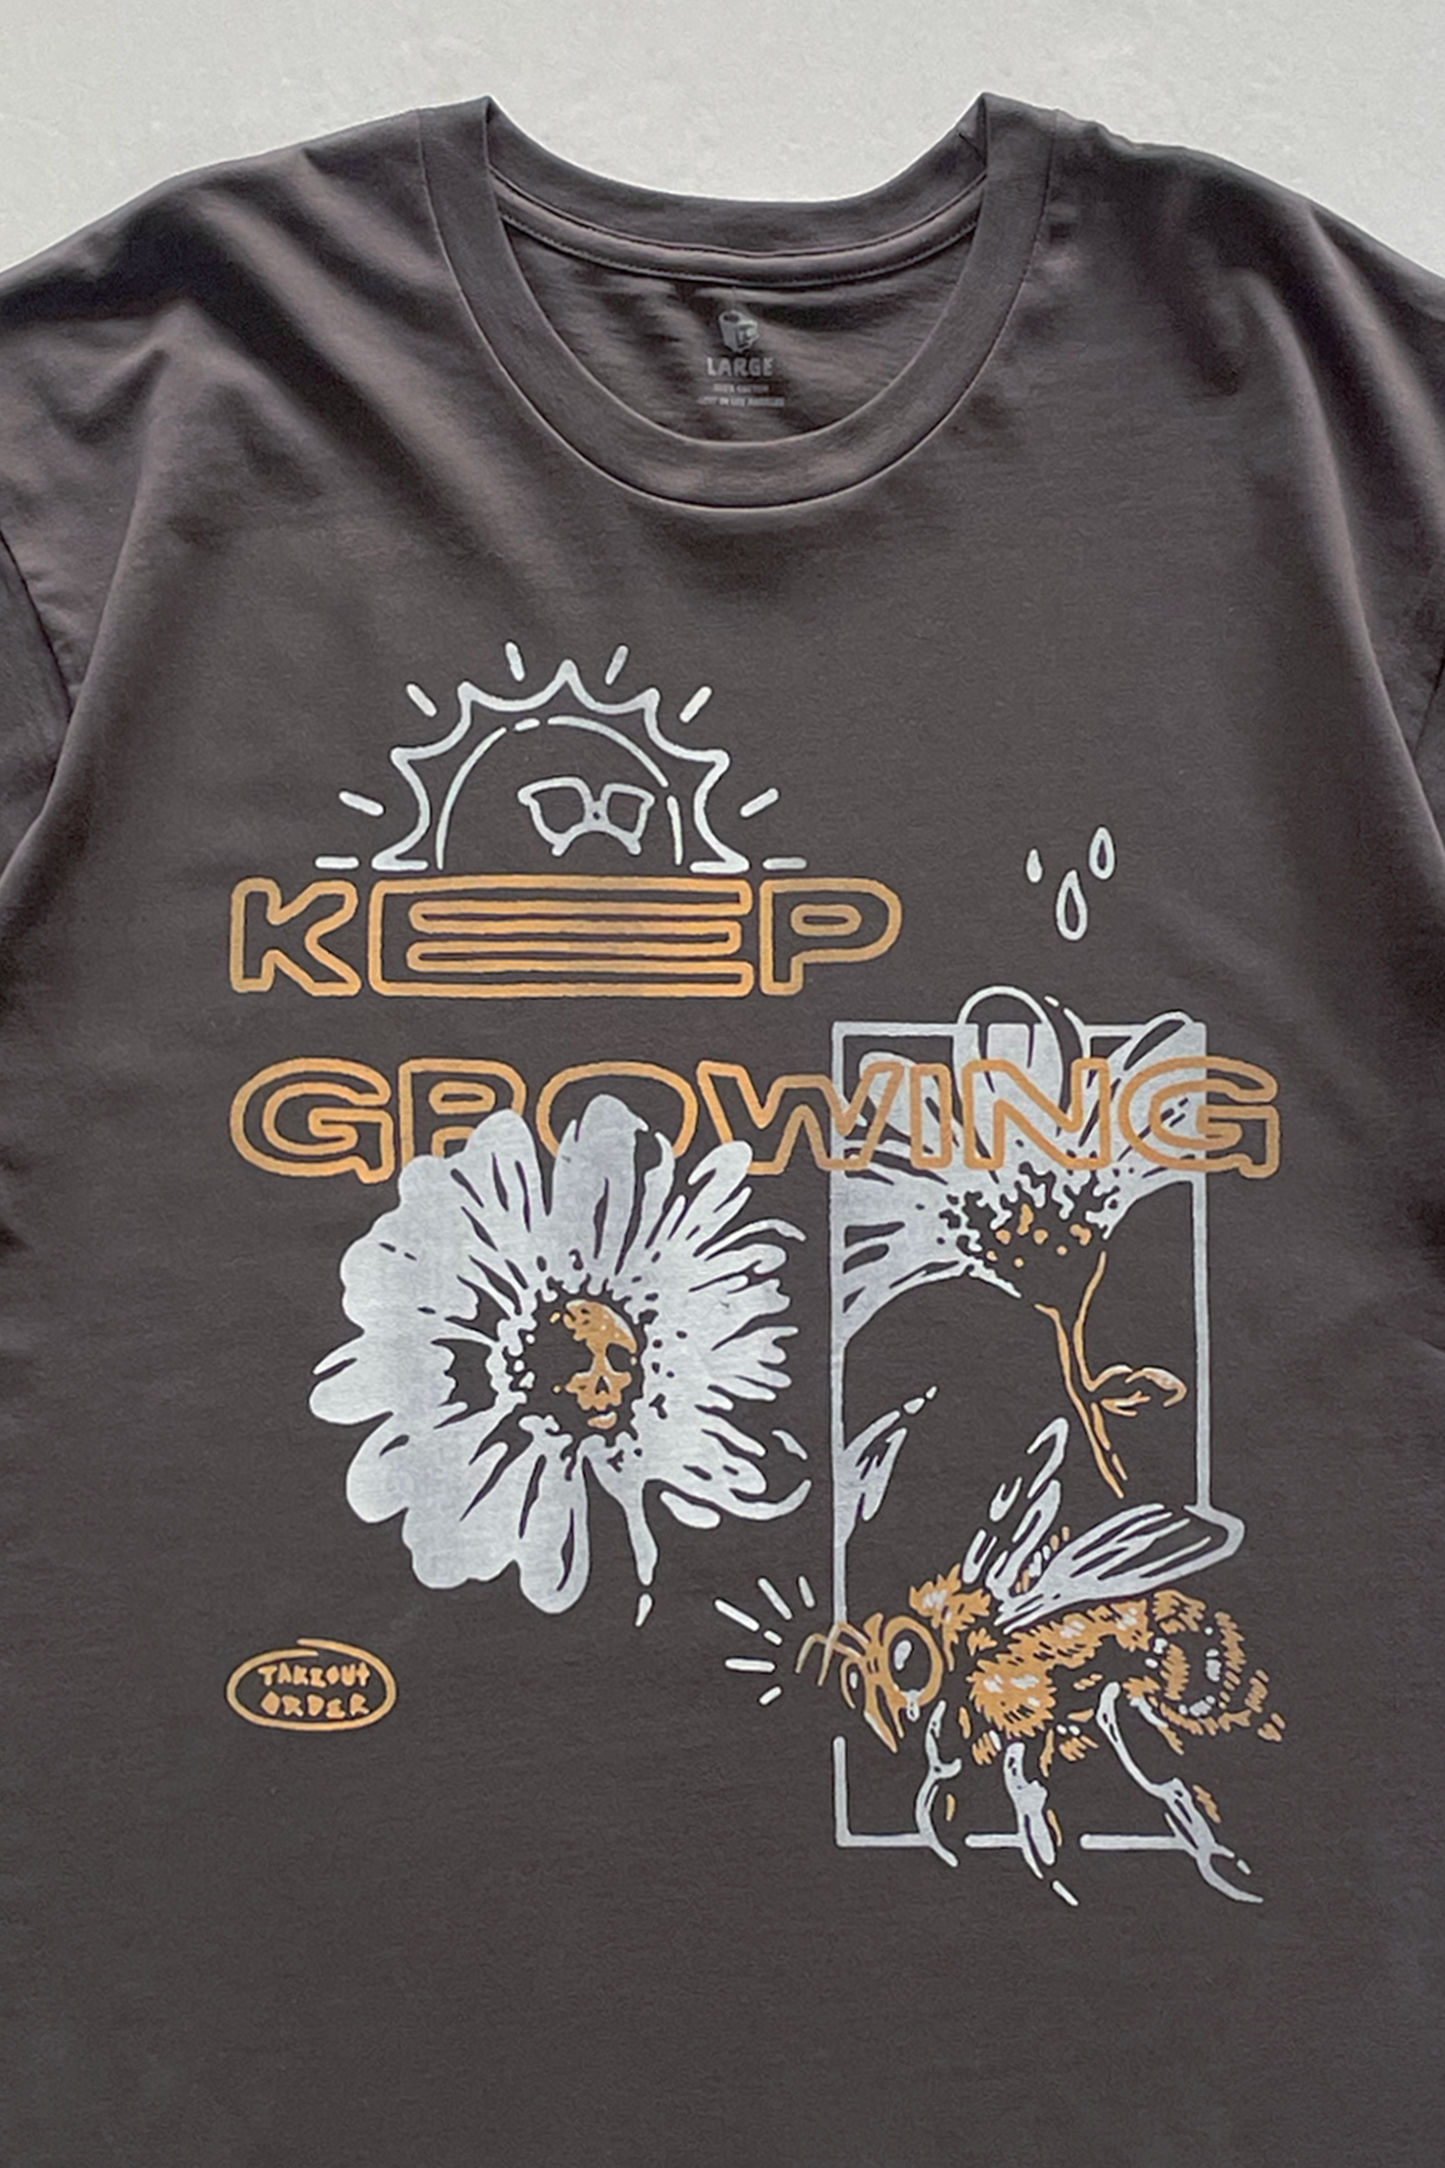 Keep Growing T-shirt